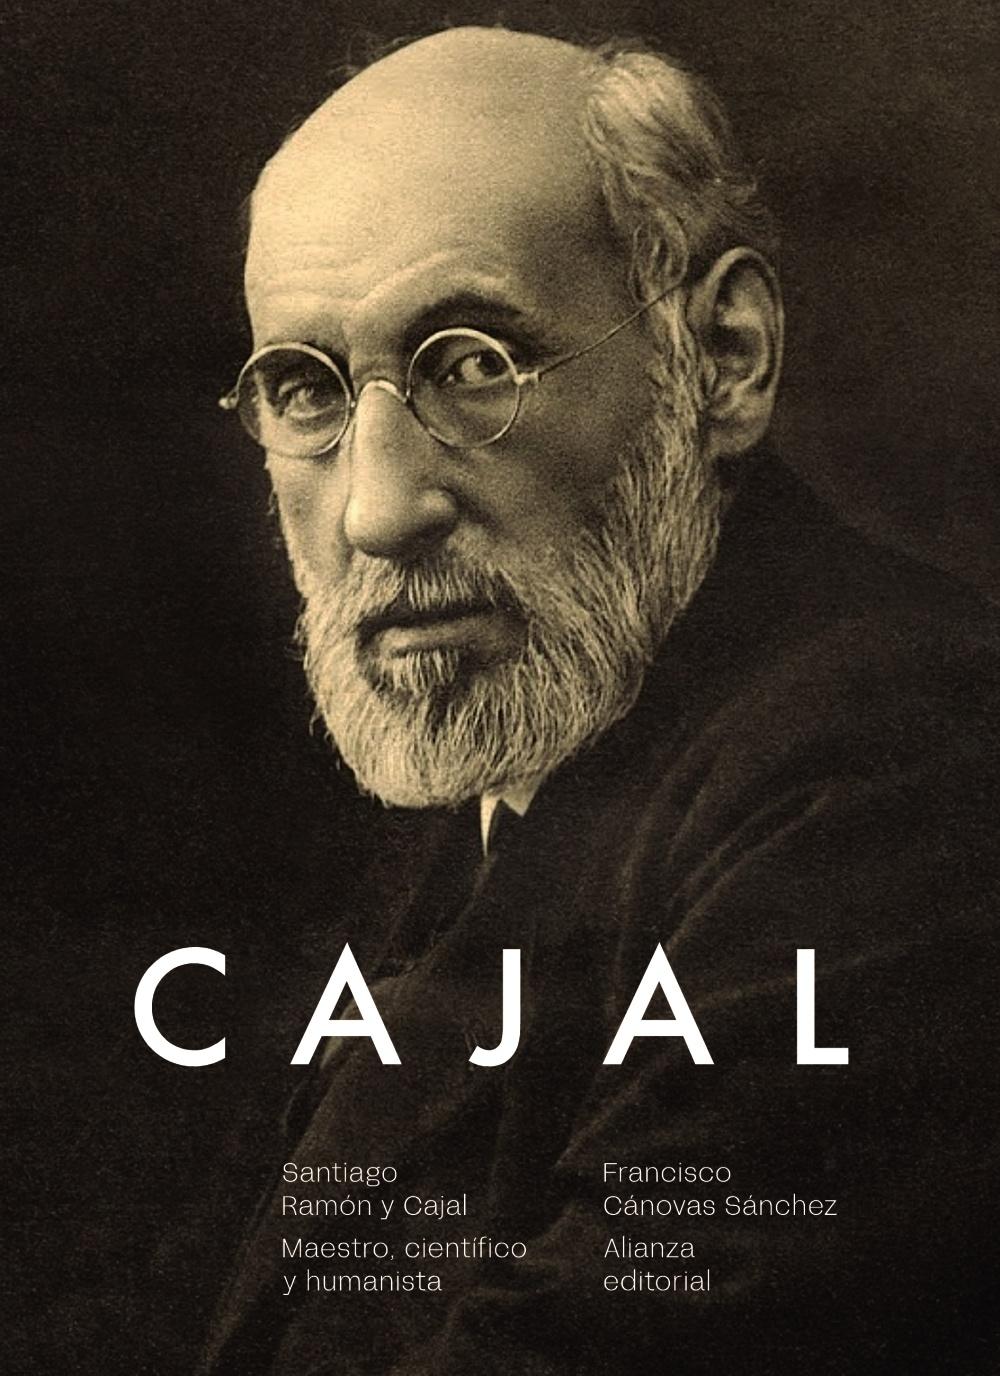 Santiago Ramón y Cajal "Maestro, científico y humanista". 